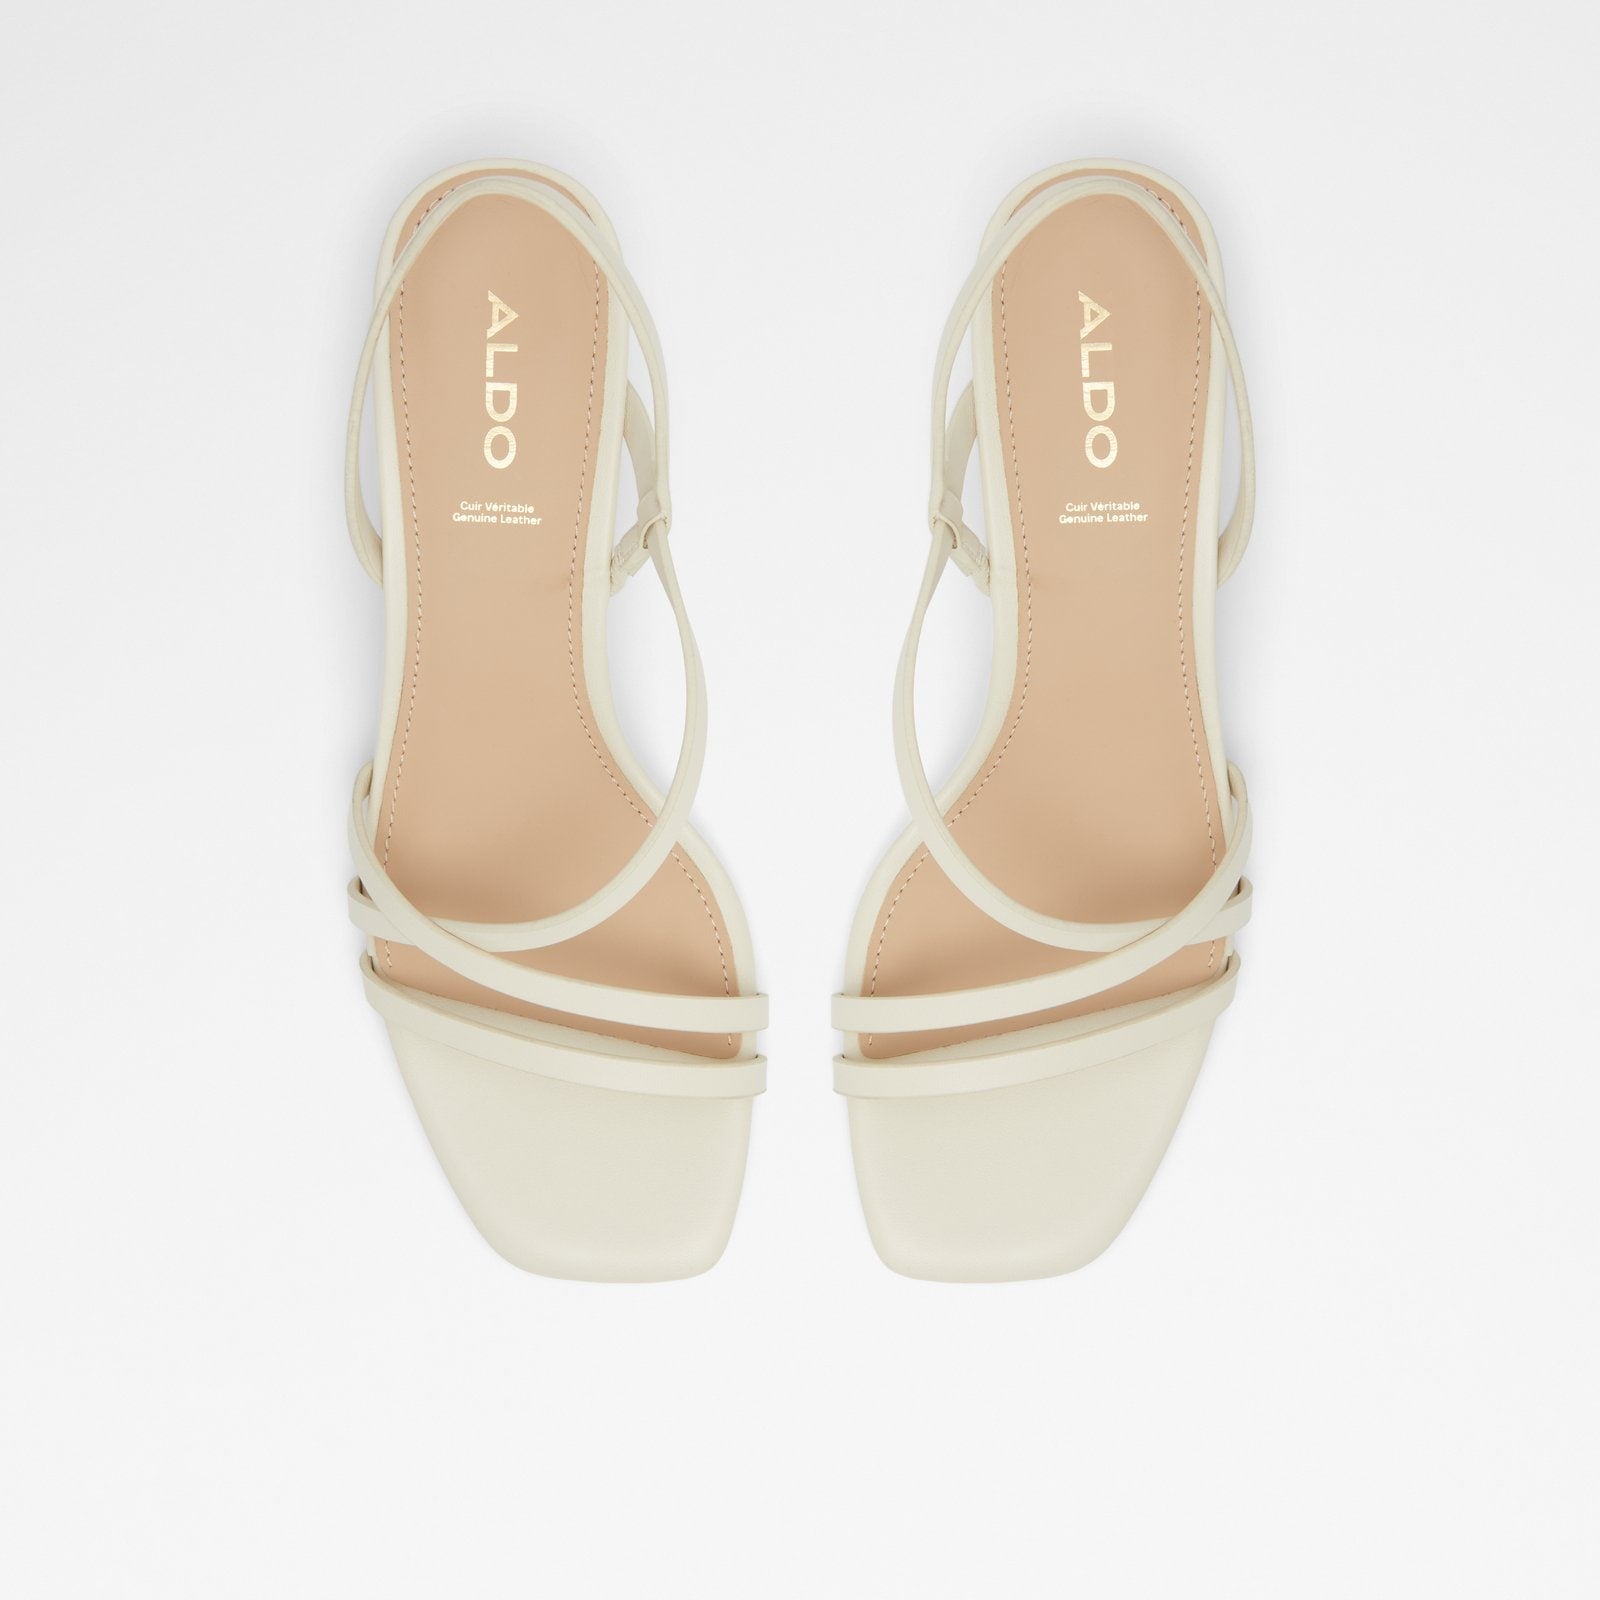 Nienwan Women Shoes - White - ALDO KSA